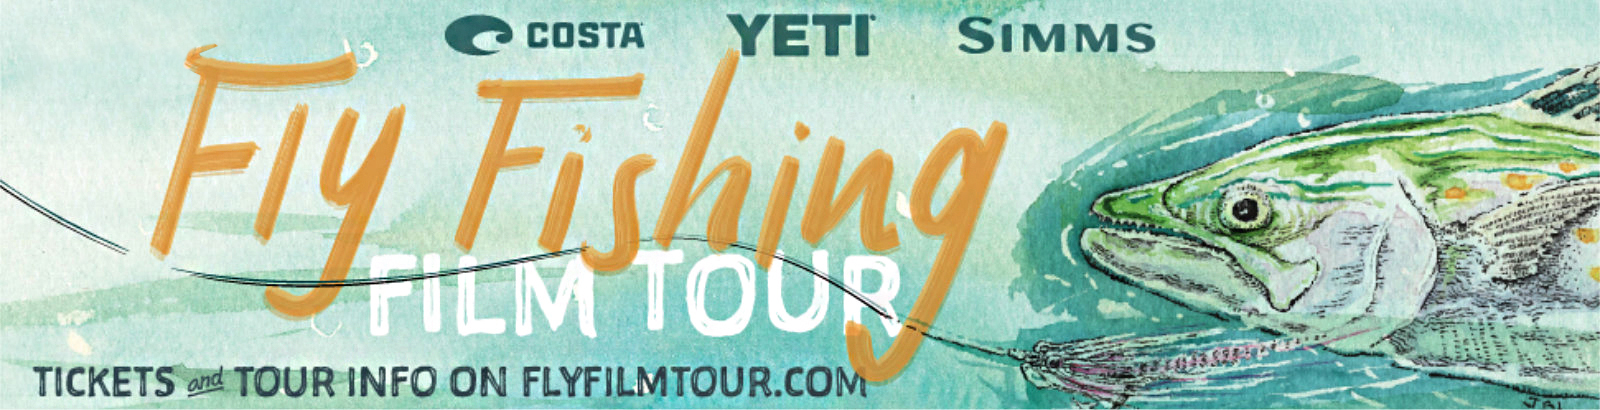 fly fishing film tour utah